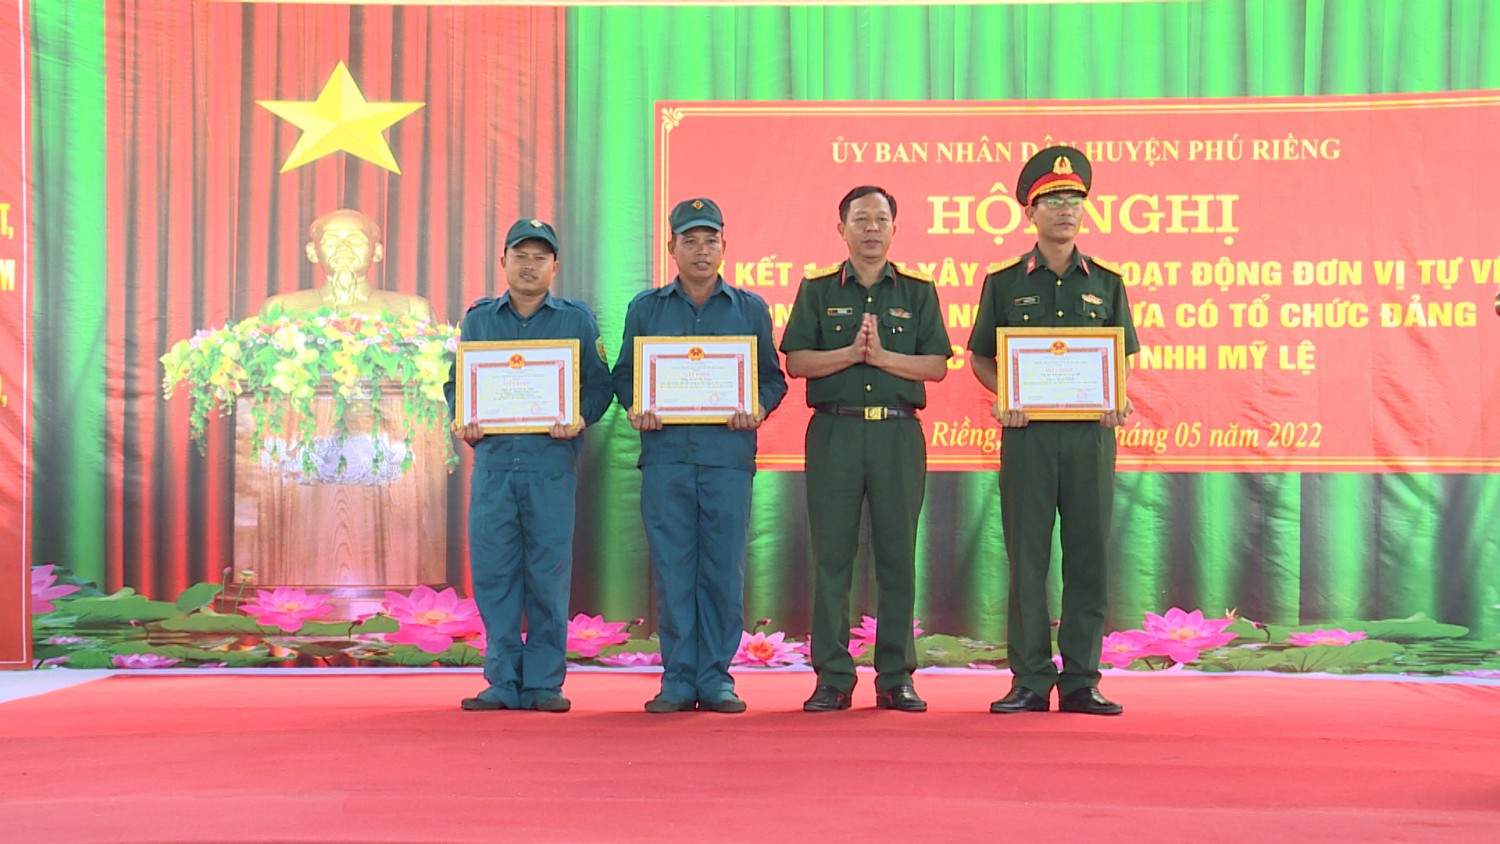 Phú Riềng sẽ tiếp tục xây dựng đơn vị tự vệ trong doanh nghiệp